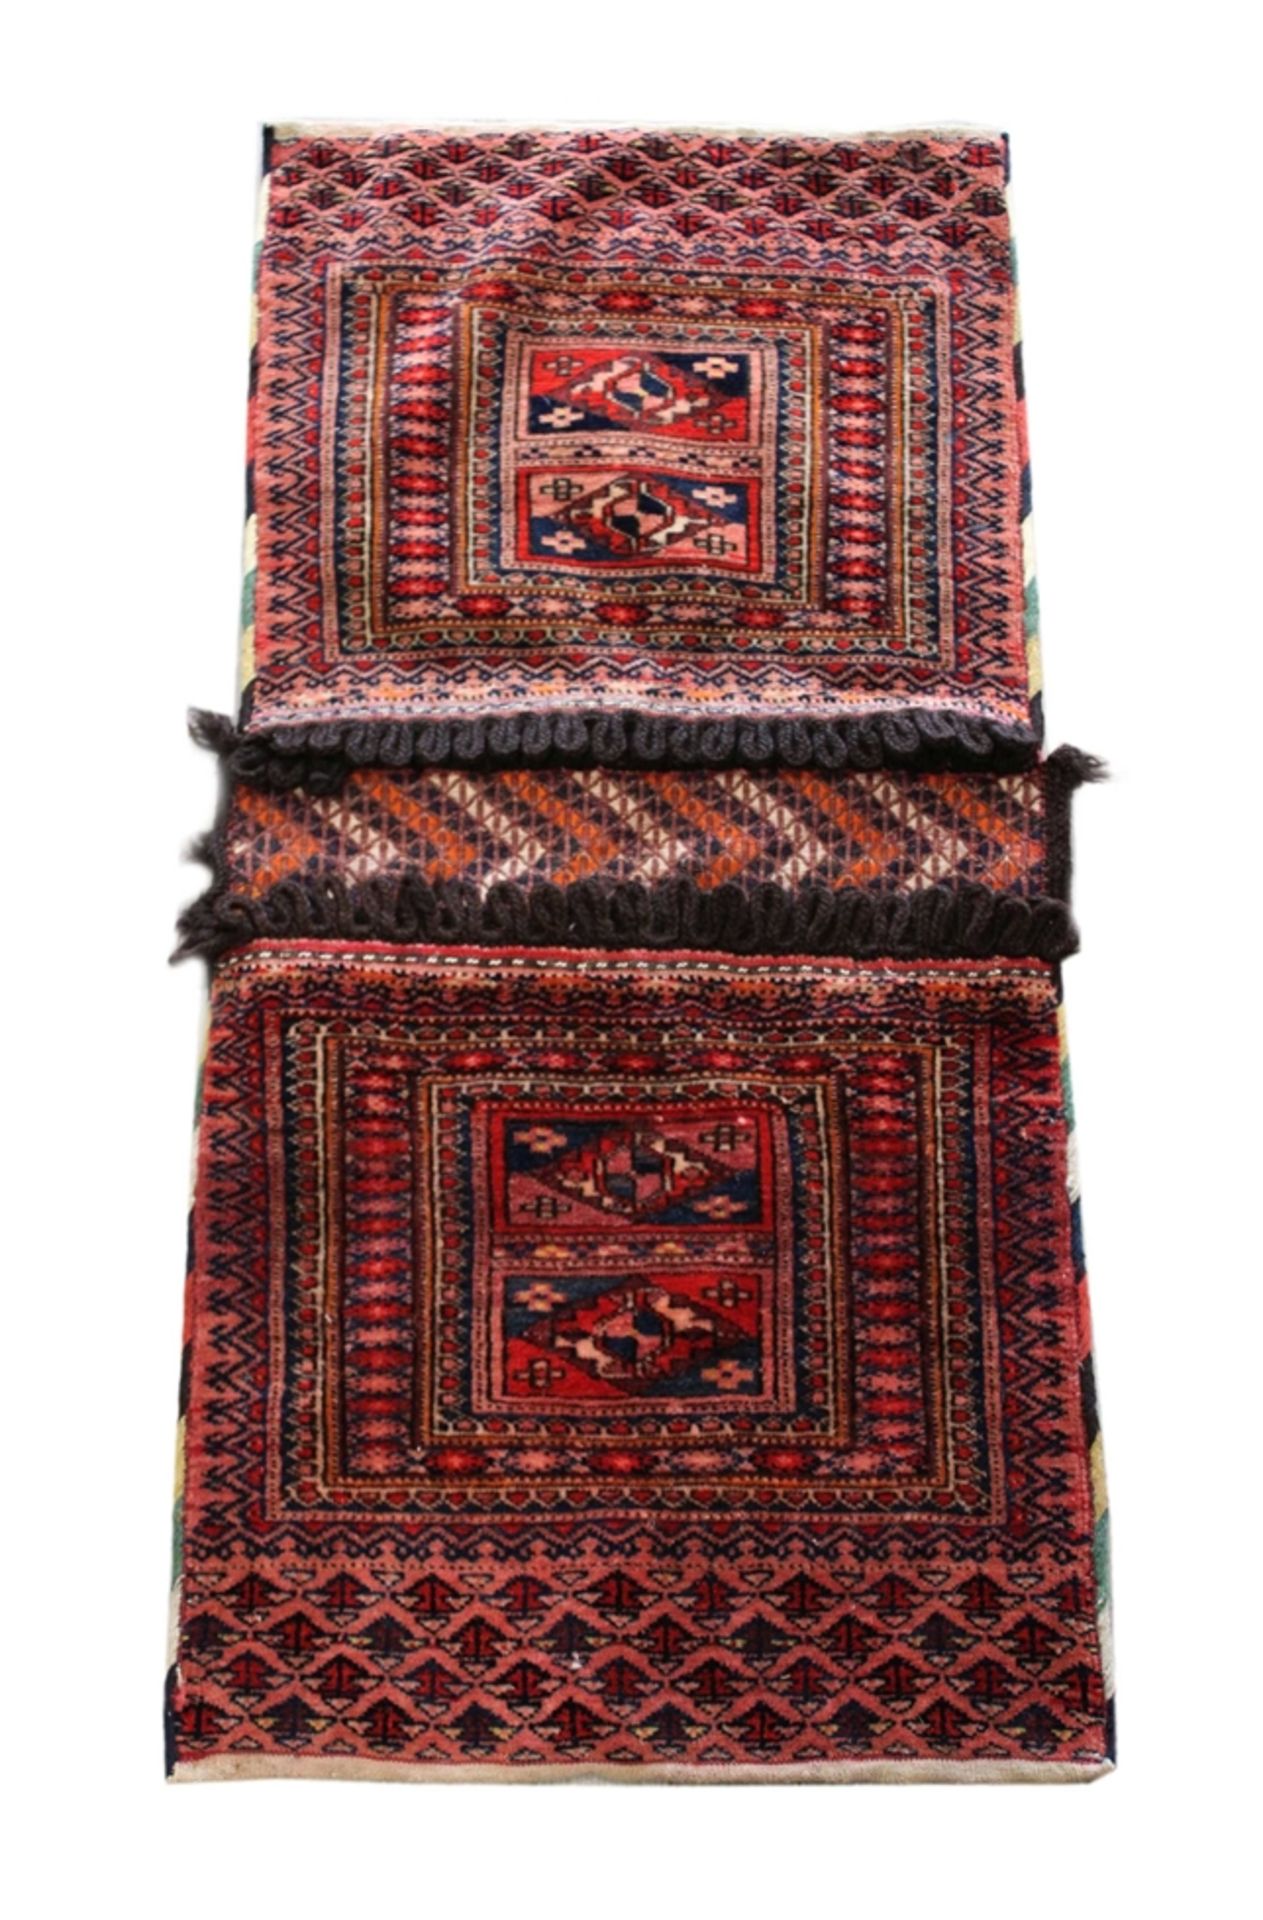 Teppich und Satteltasche, Satteltasche: Wolle a. Wolle, ca. 80 Jahre alt. Maße: 90 x 43 cm. Altersb - Bild 3 aus 4